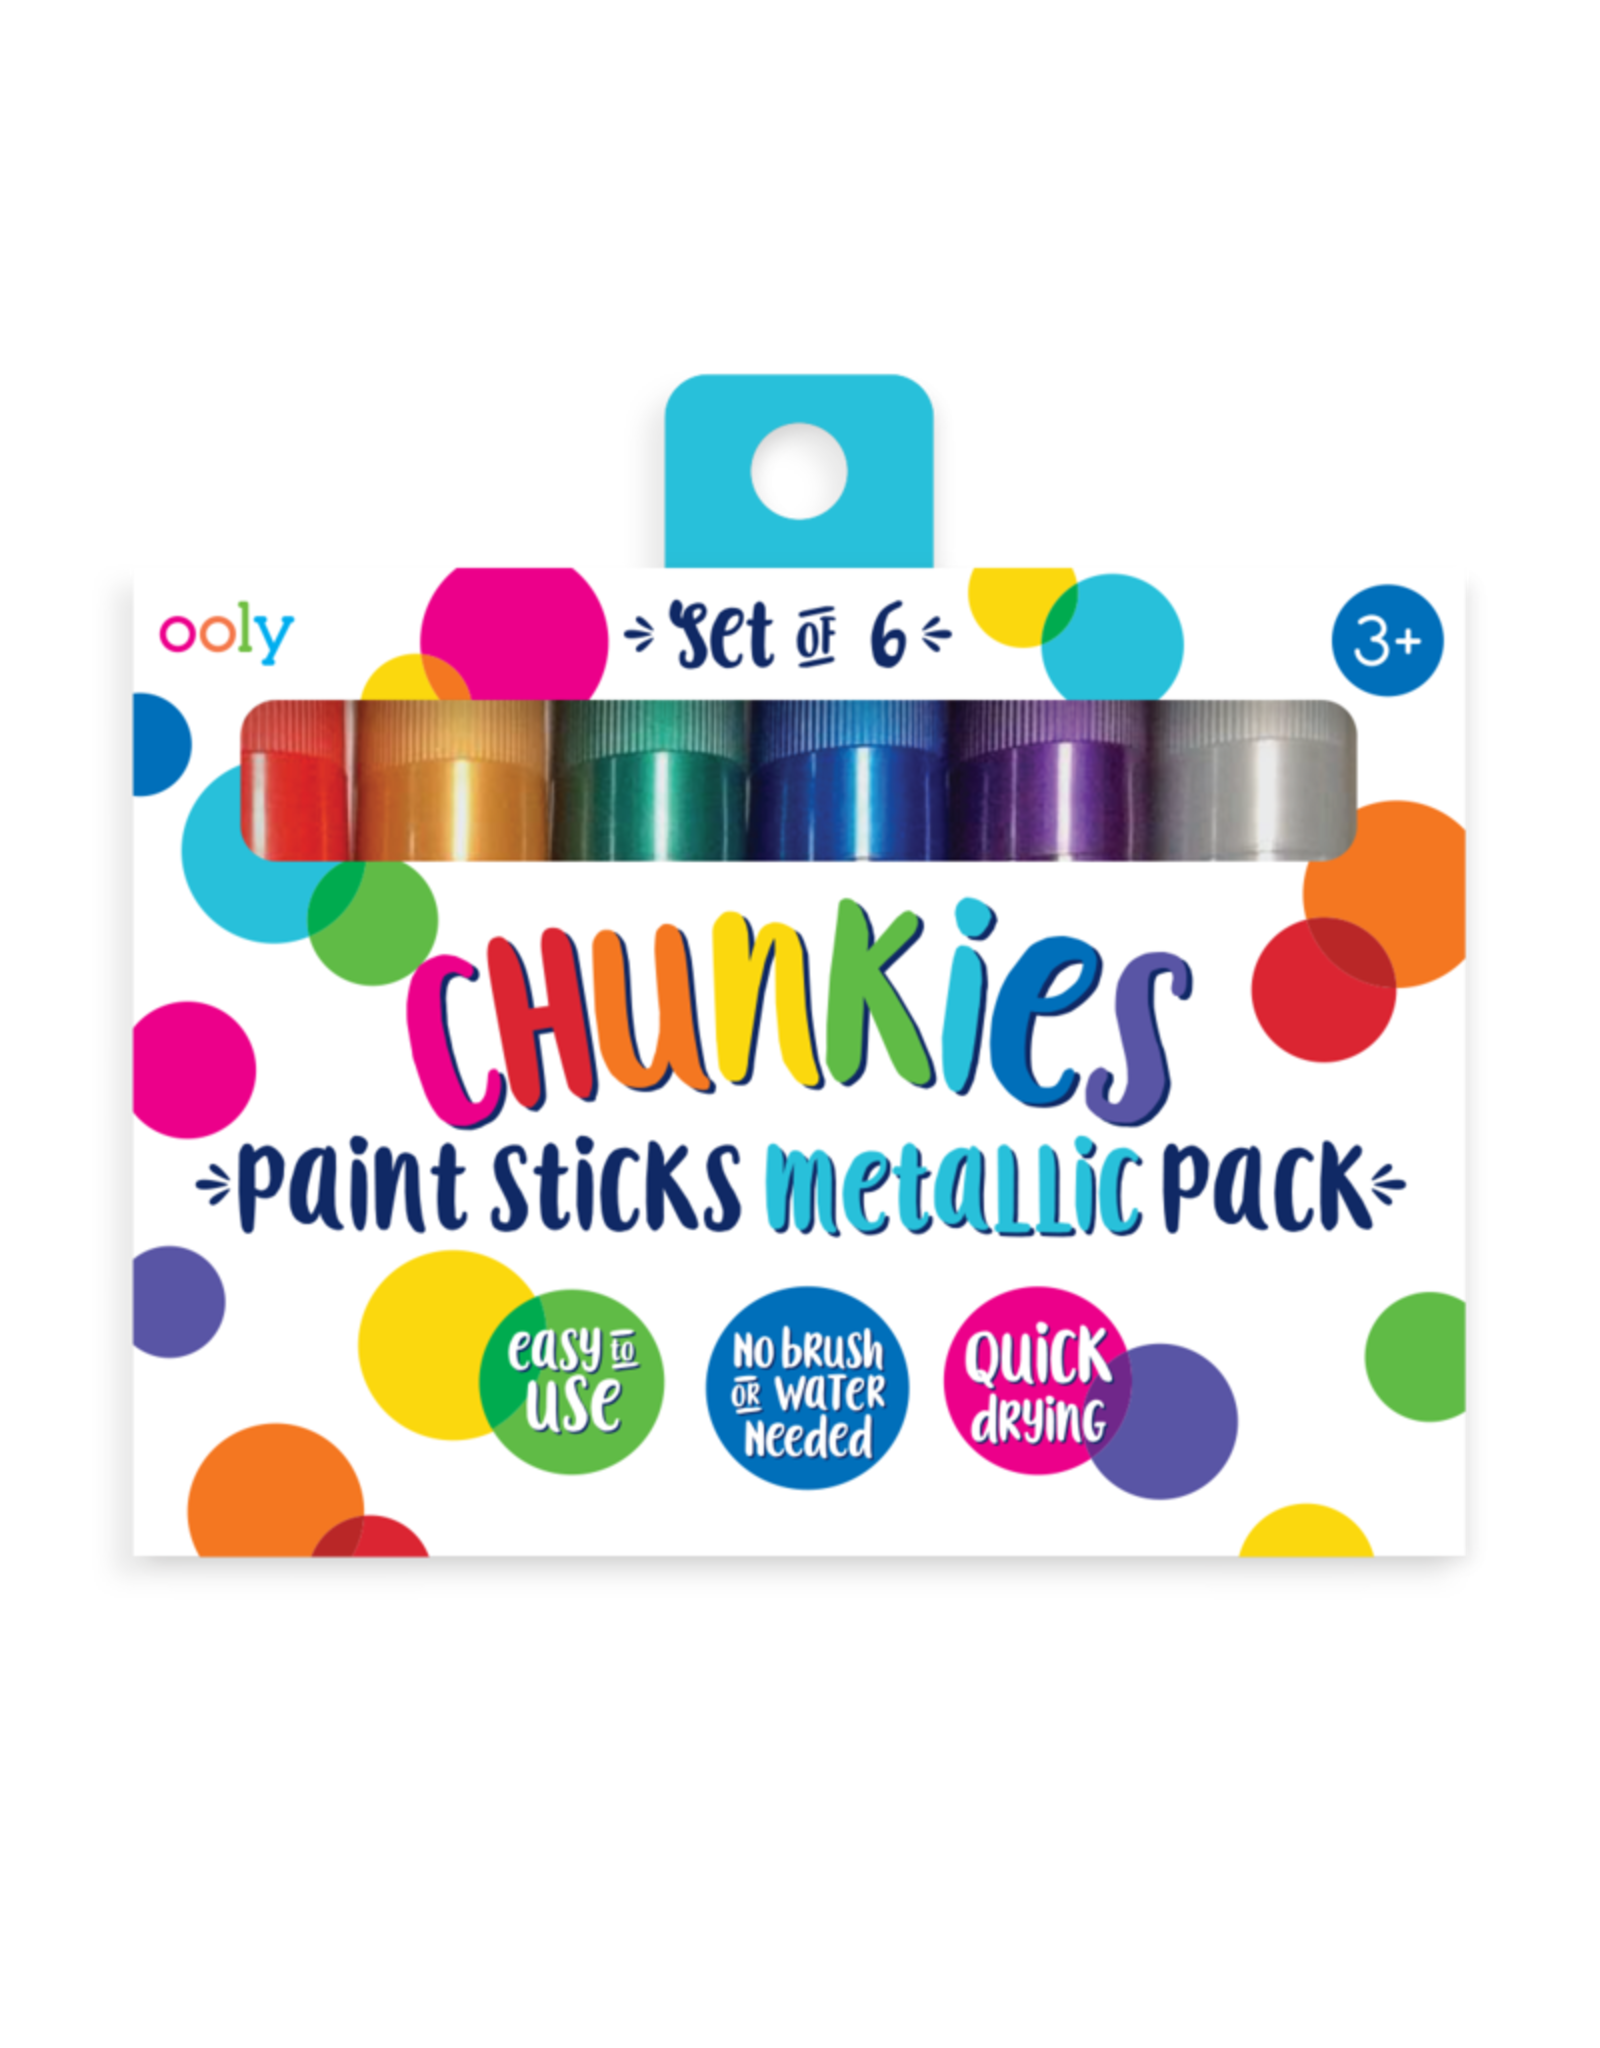 Ooly Chunkies Paint Sticks Metallic - Set Of 6